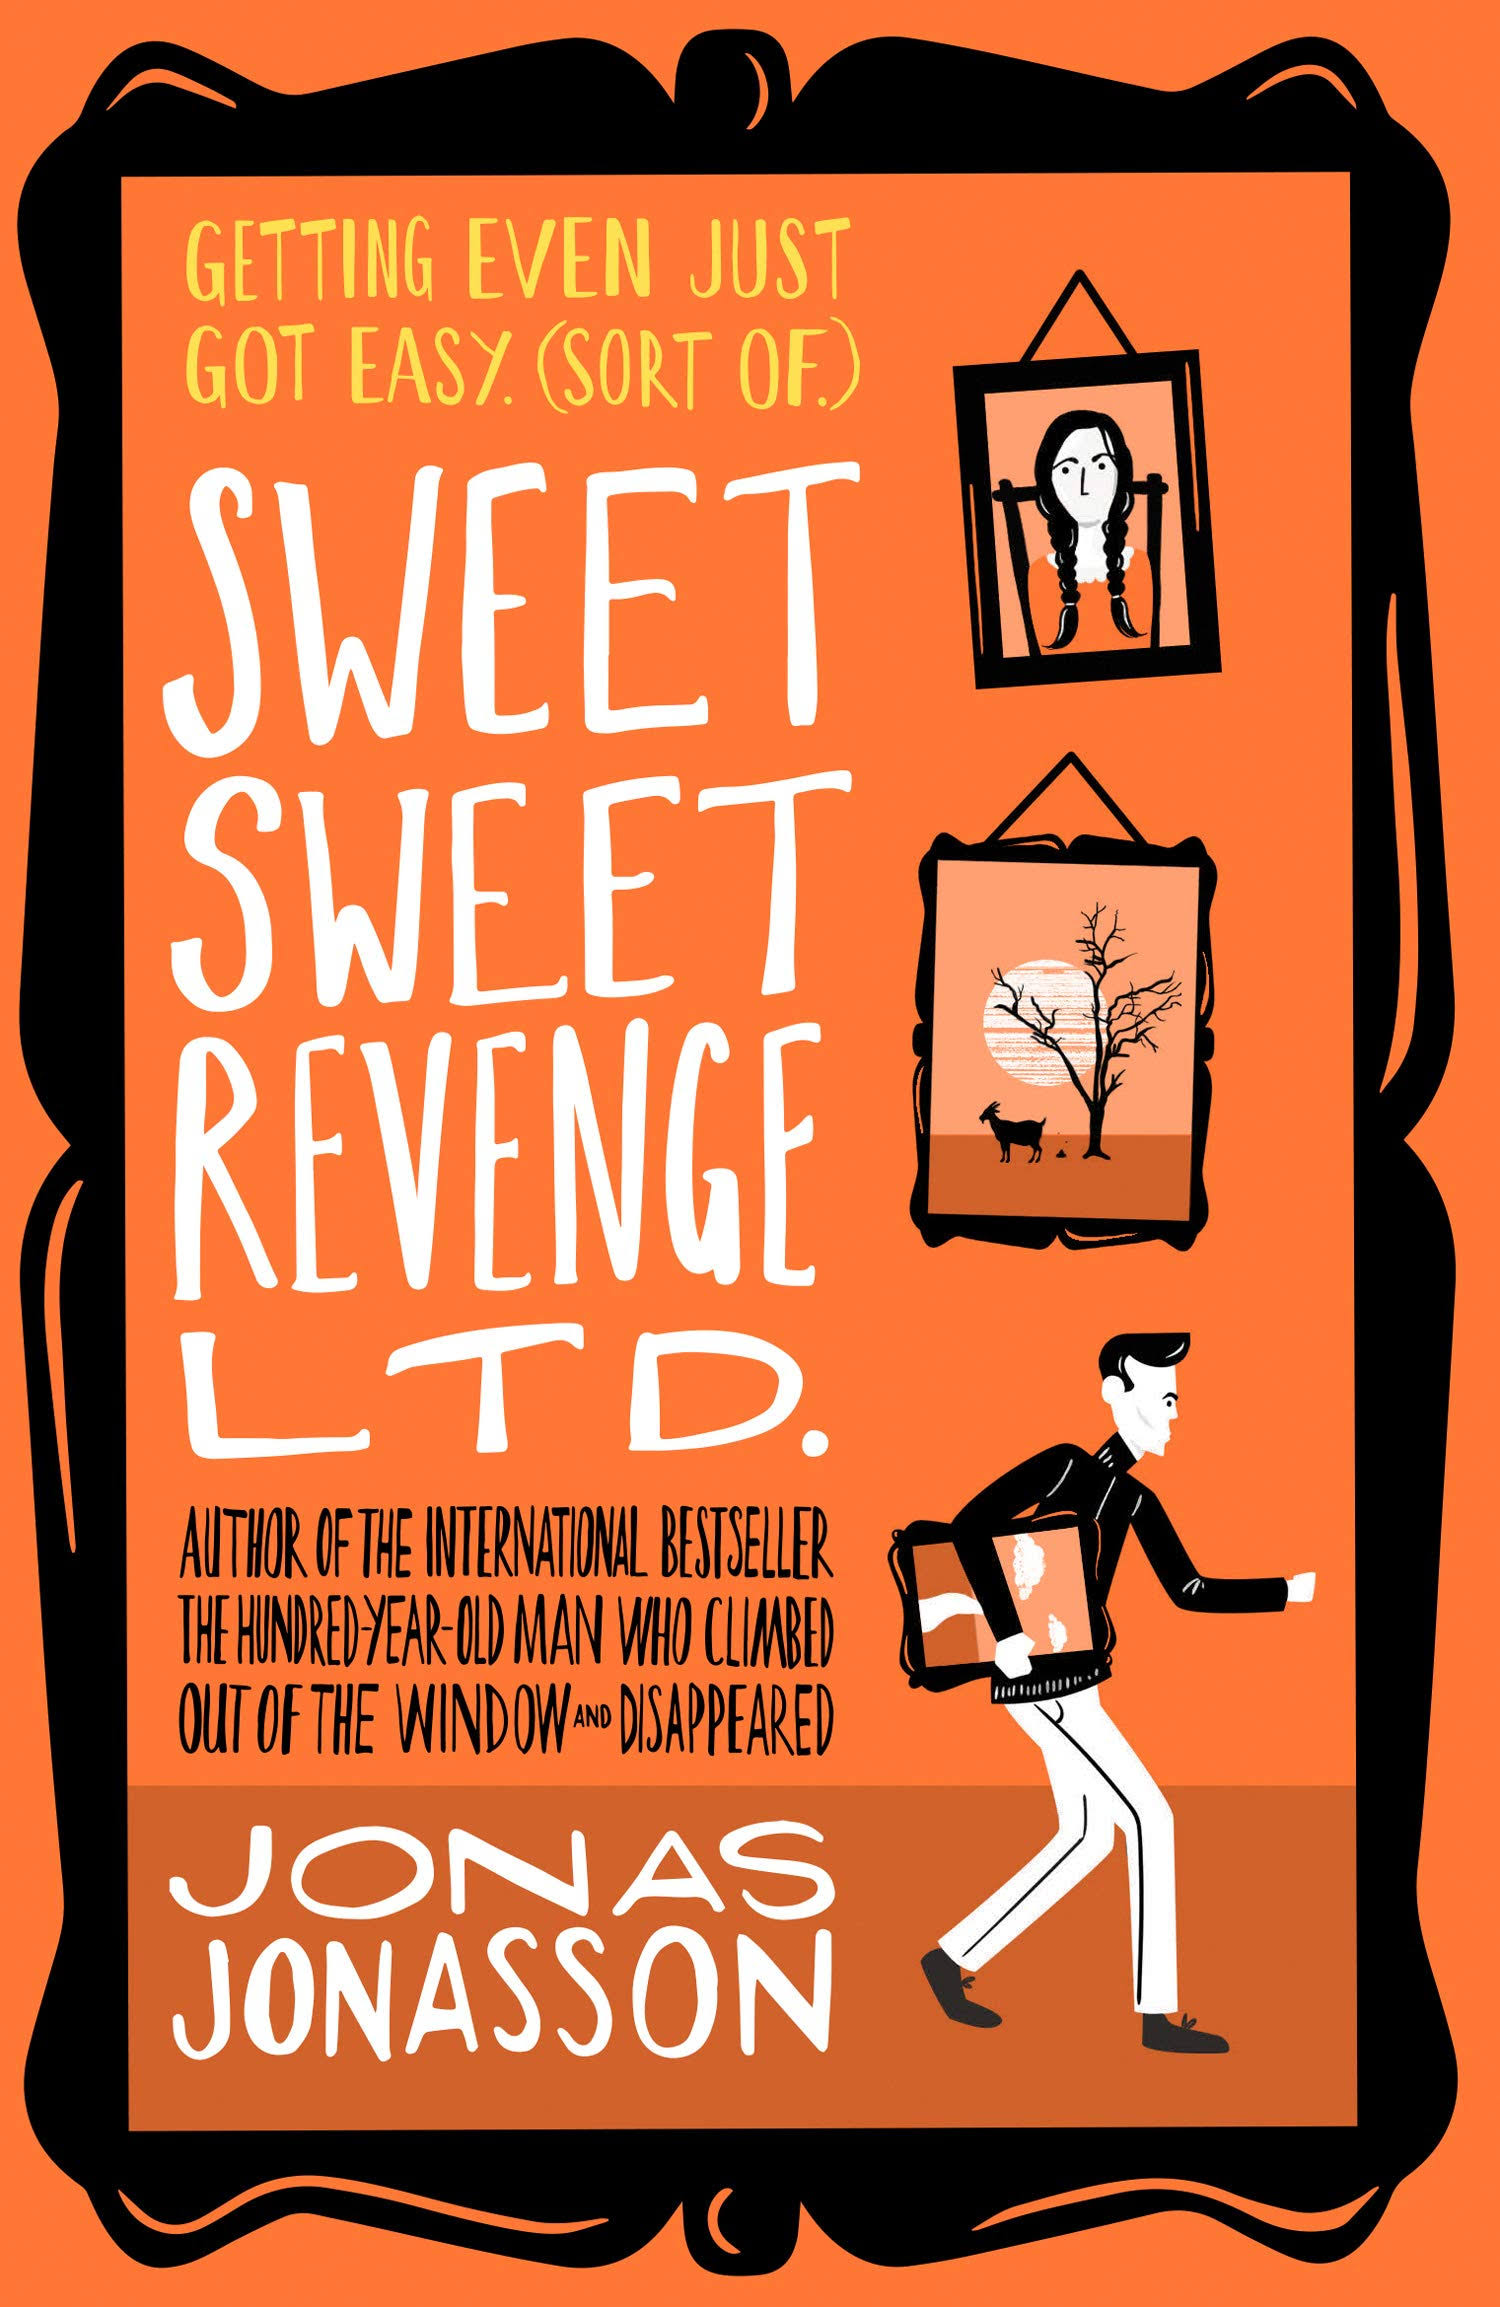 Sweet Sweet Revenge Ltd [Book]